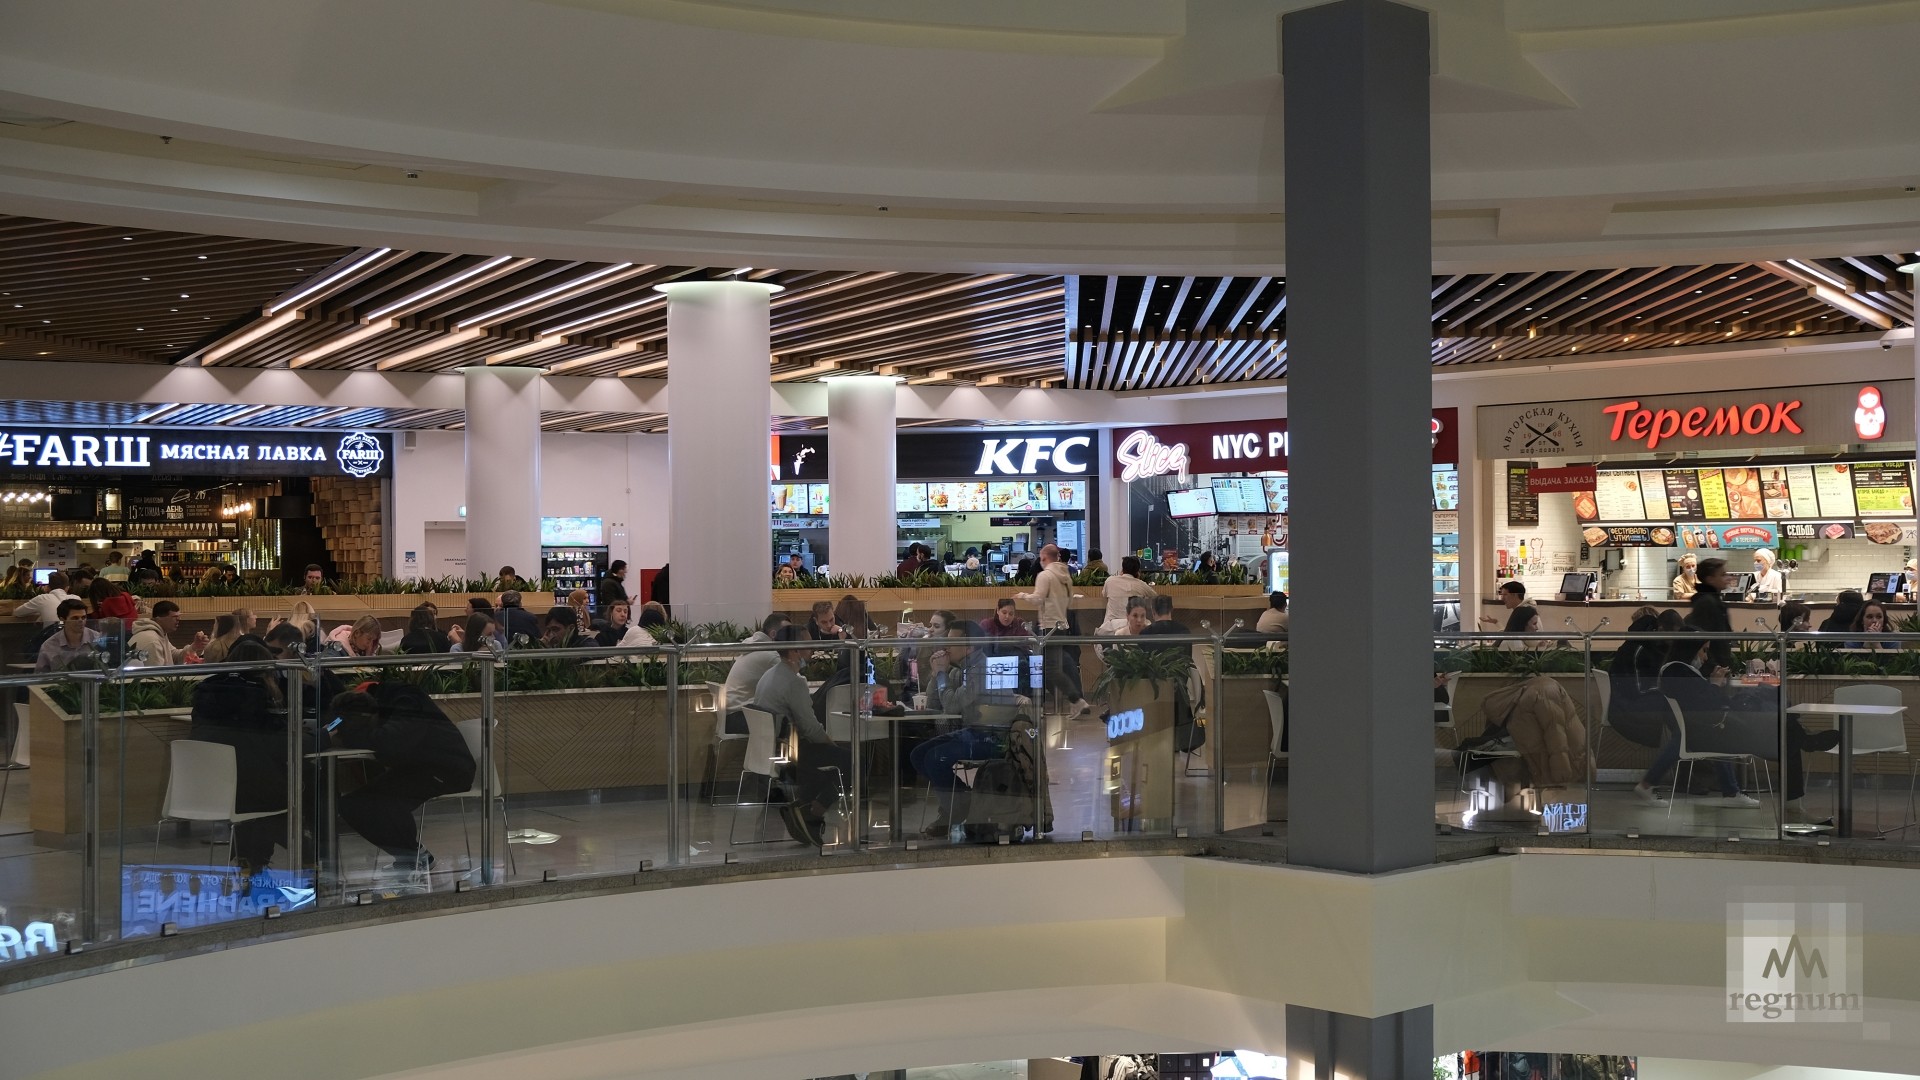 Фудкорты в торговых центрах снова ждут своих посетителей 